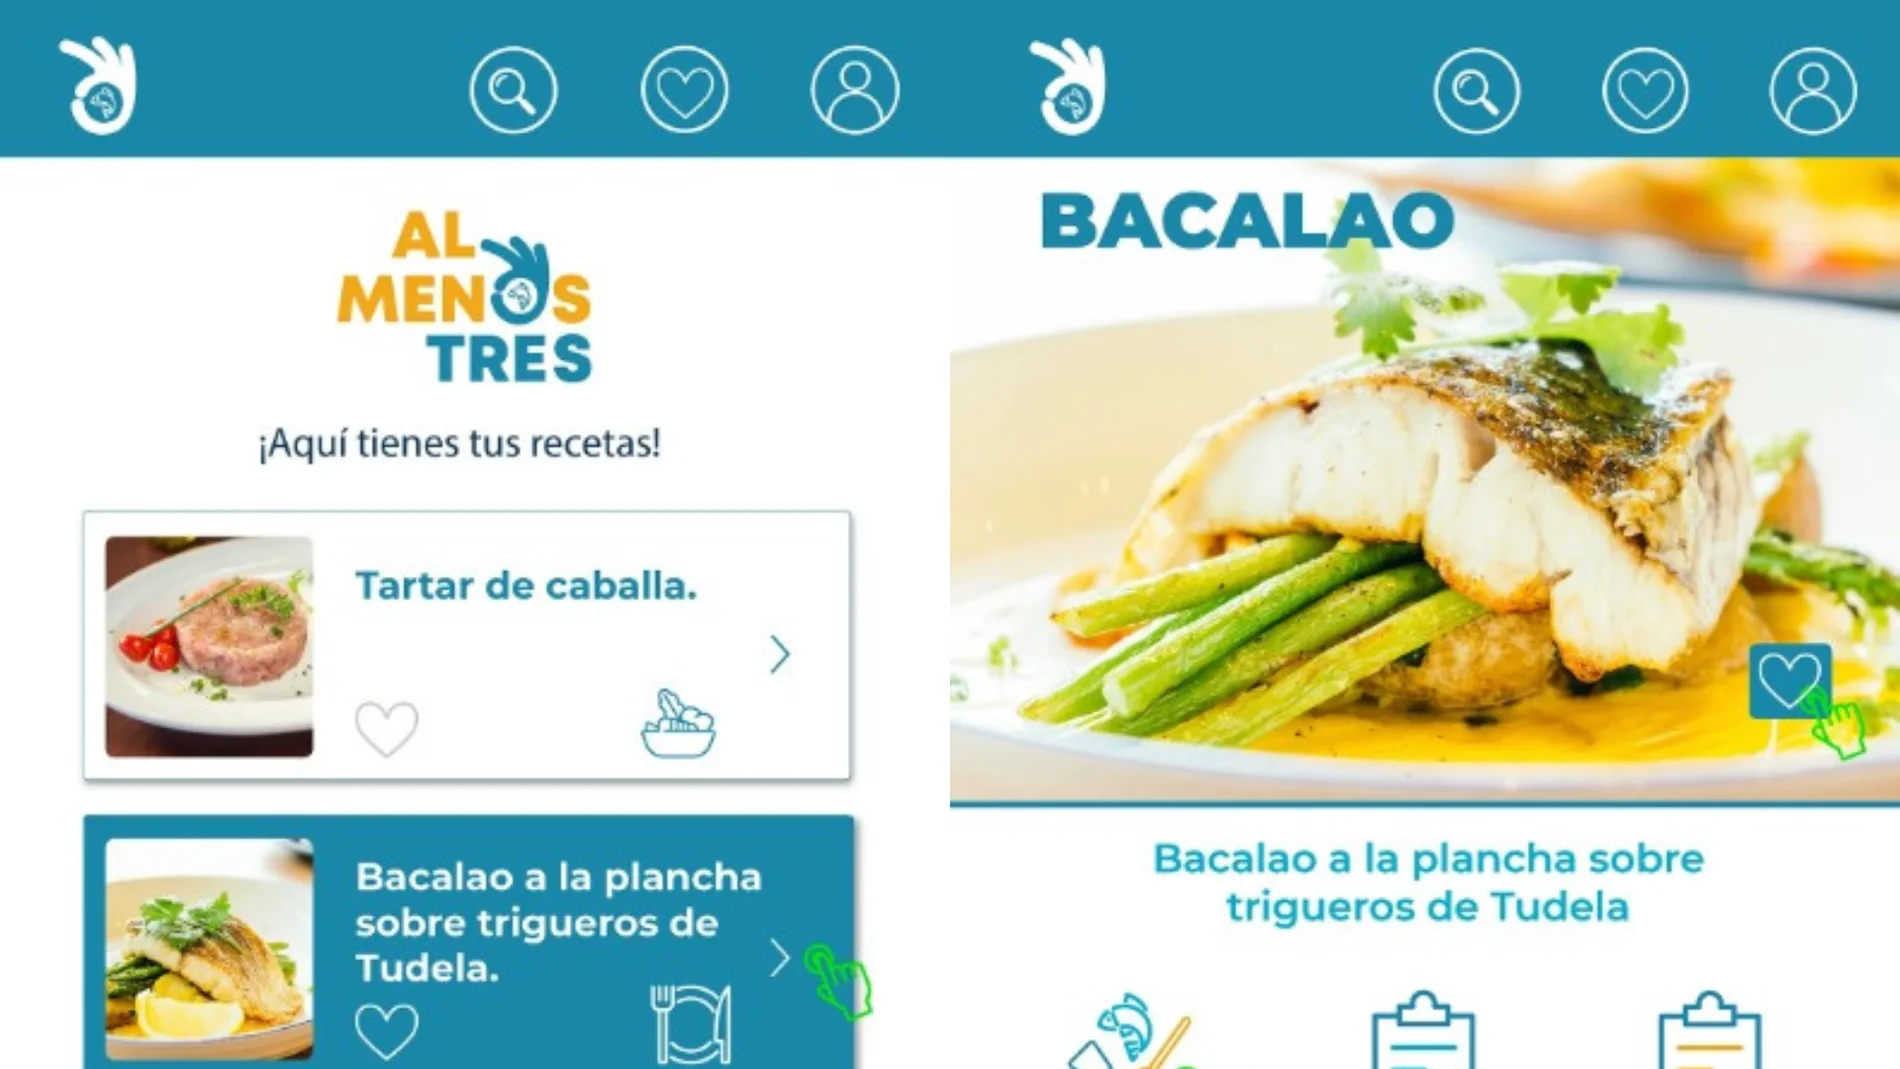 Galicia potencia la dieta atlántica a través de la app &#39;Al menos tres&#39;